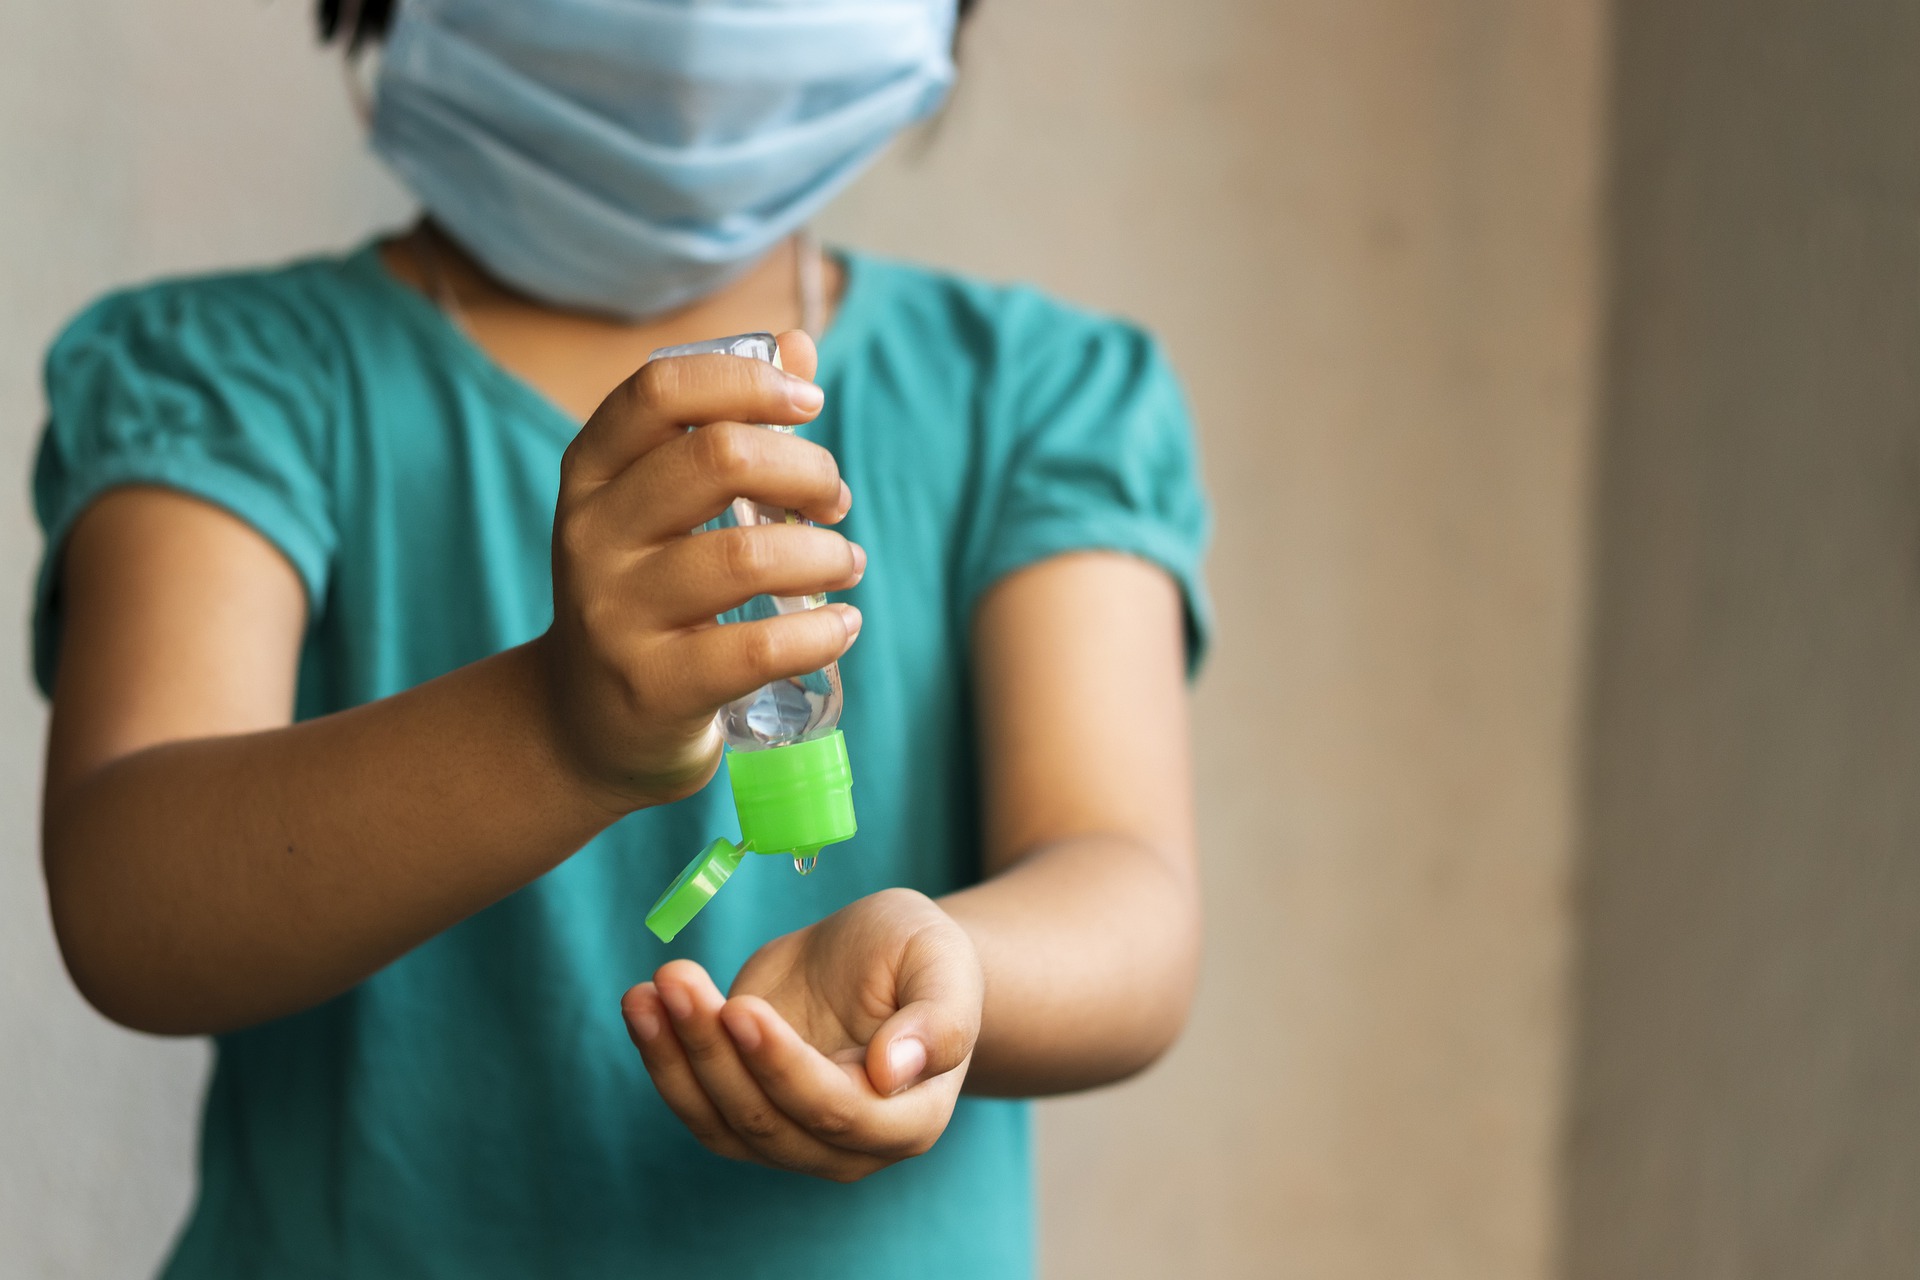 Victimas invisibles: cómo está afectando la pandemia a los niños y adolescentes en Chile